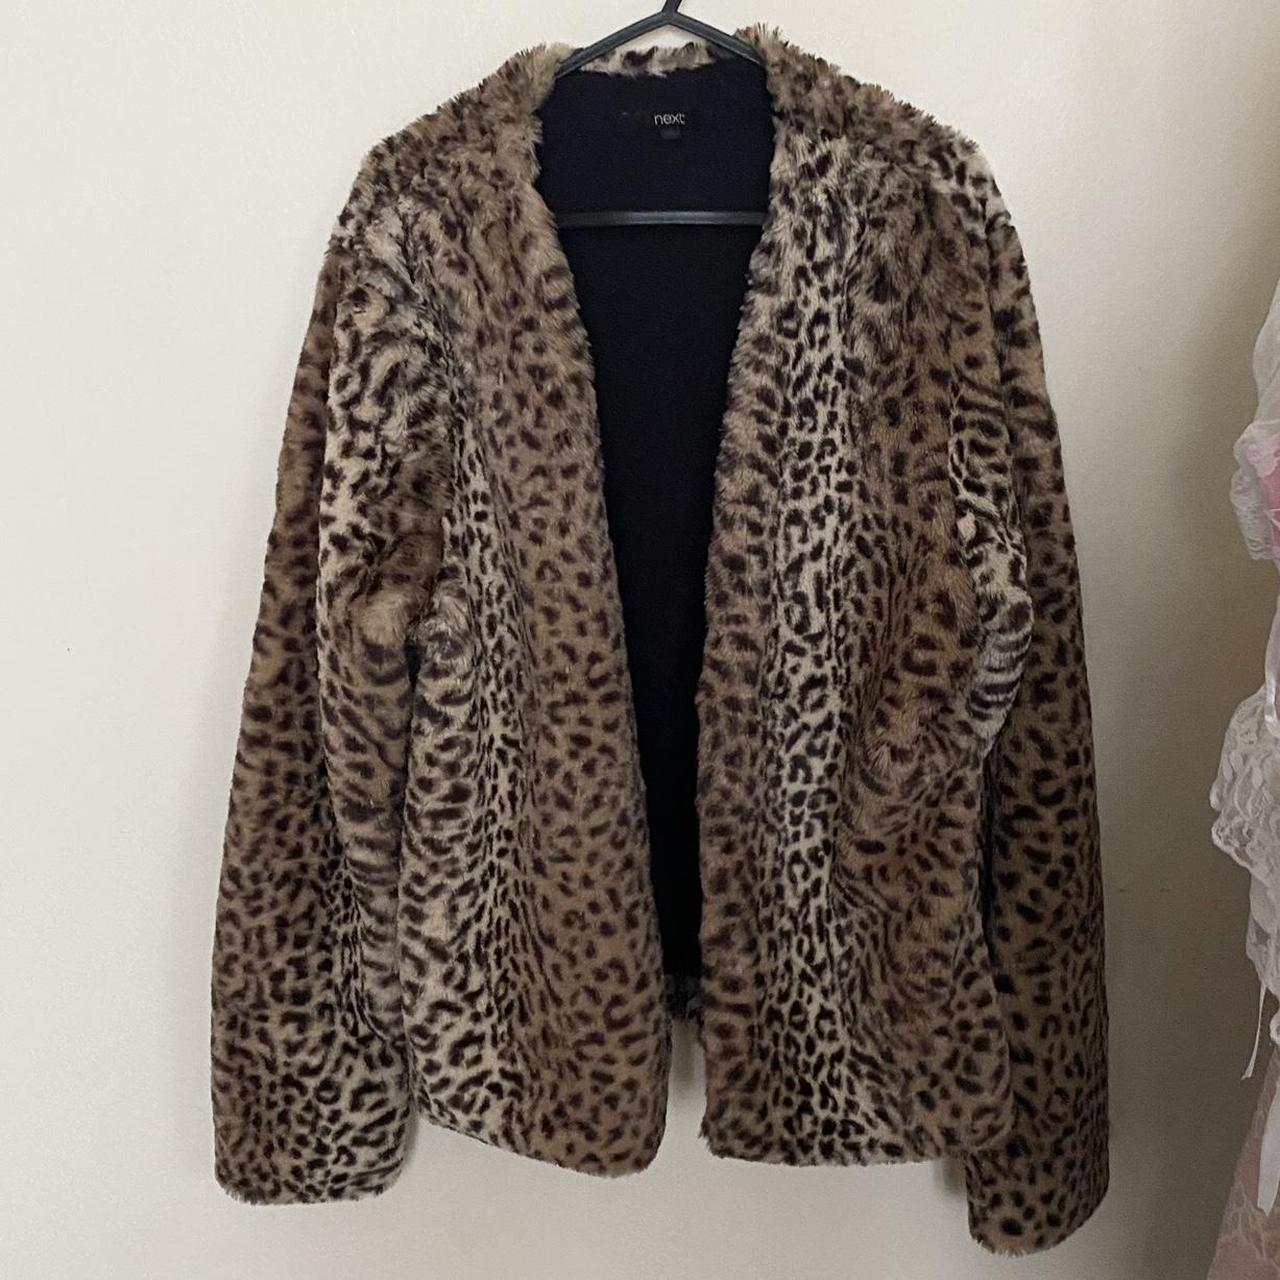 Fur coat leopard design (Fake fur) Can fit size... - Depop